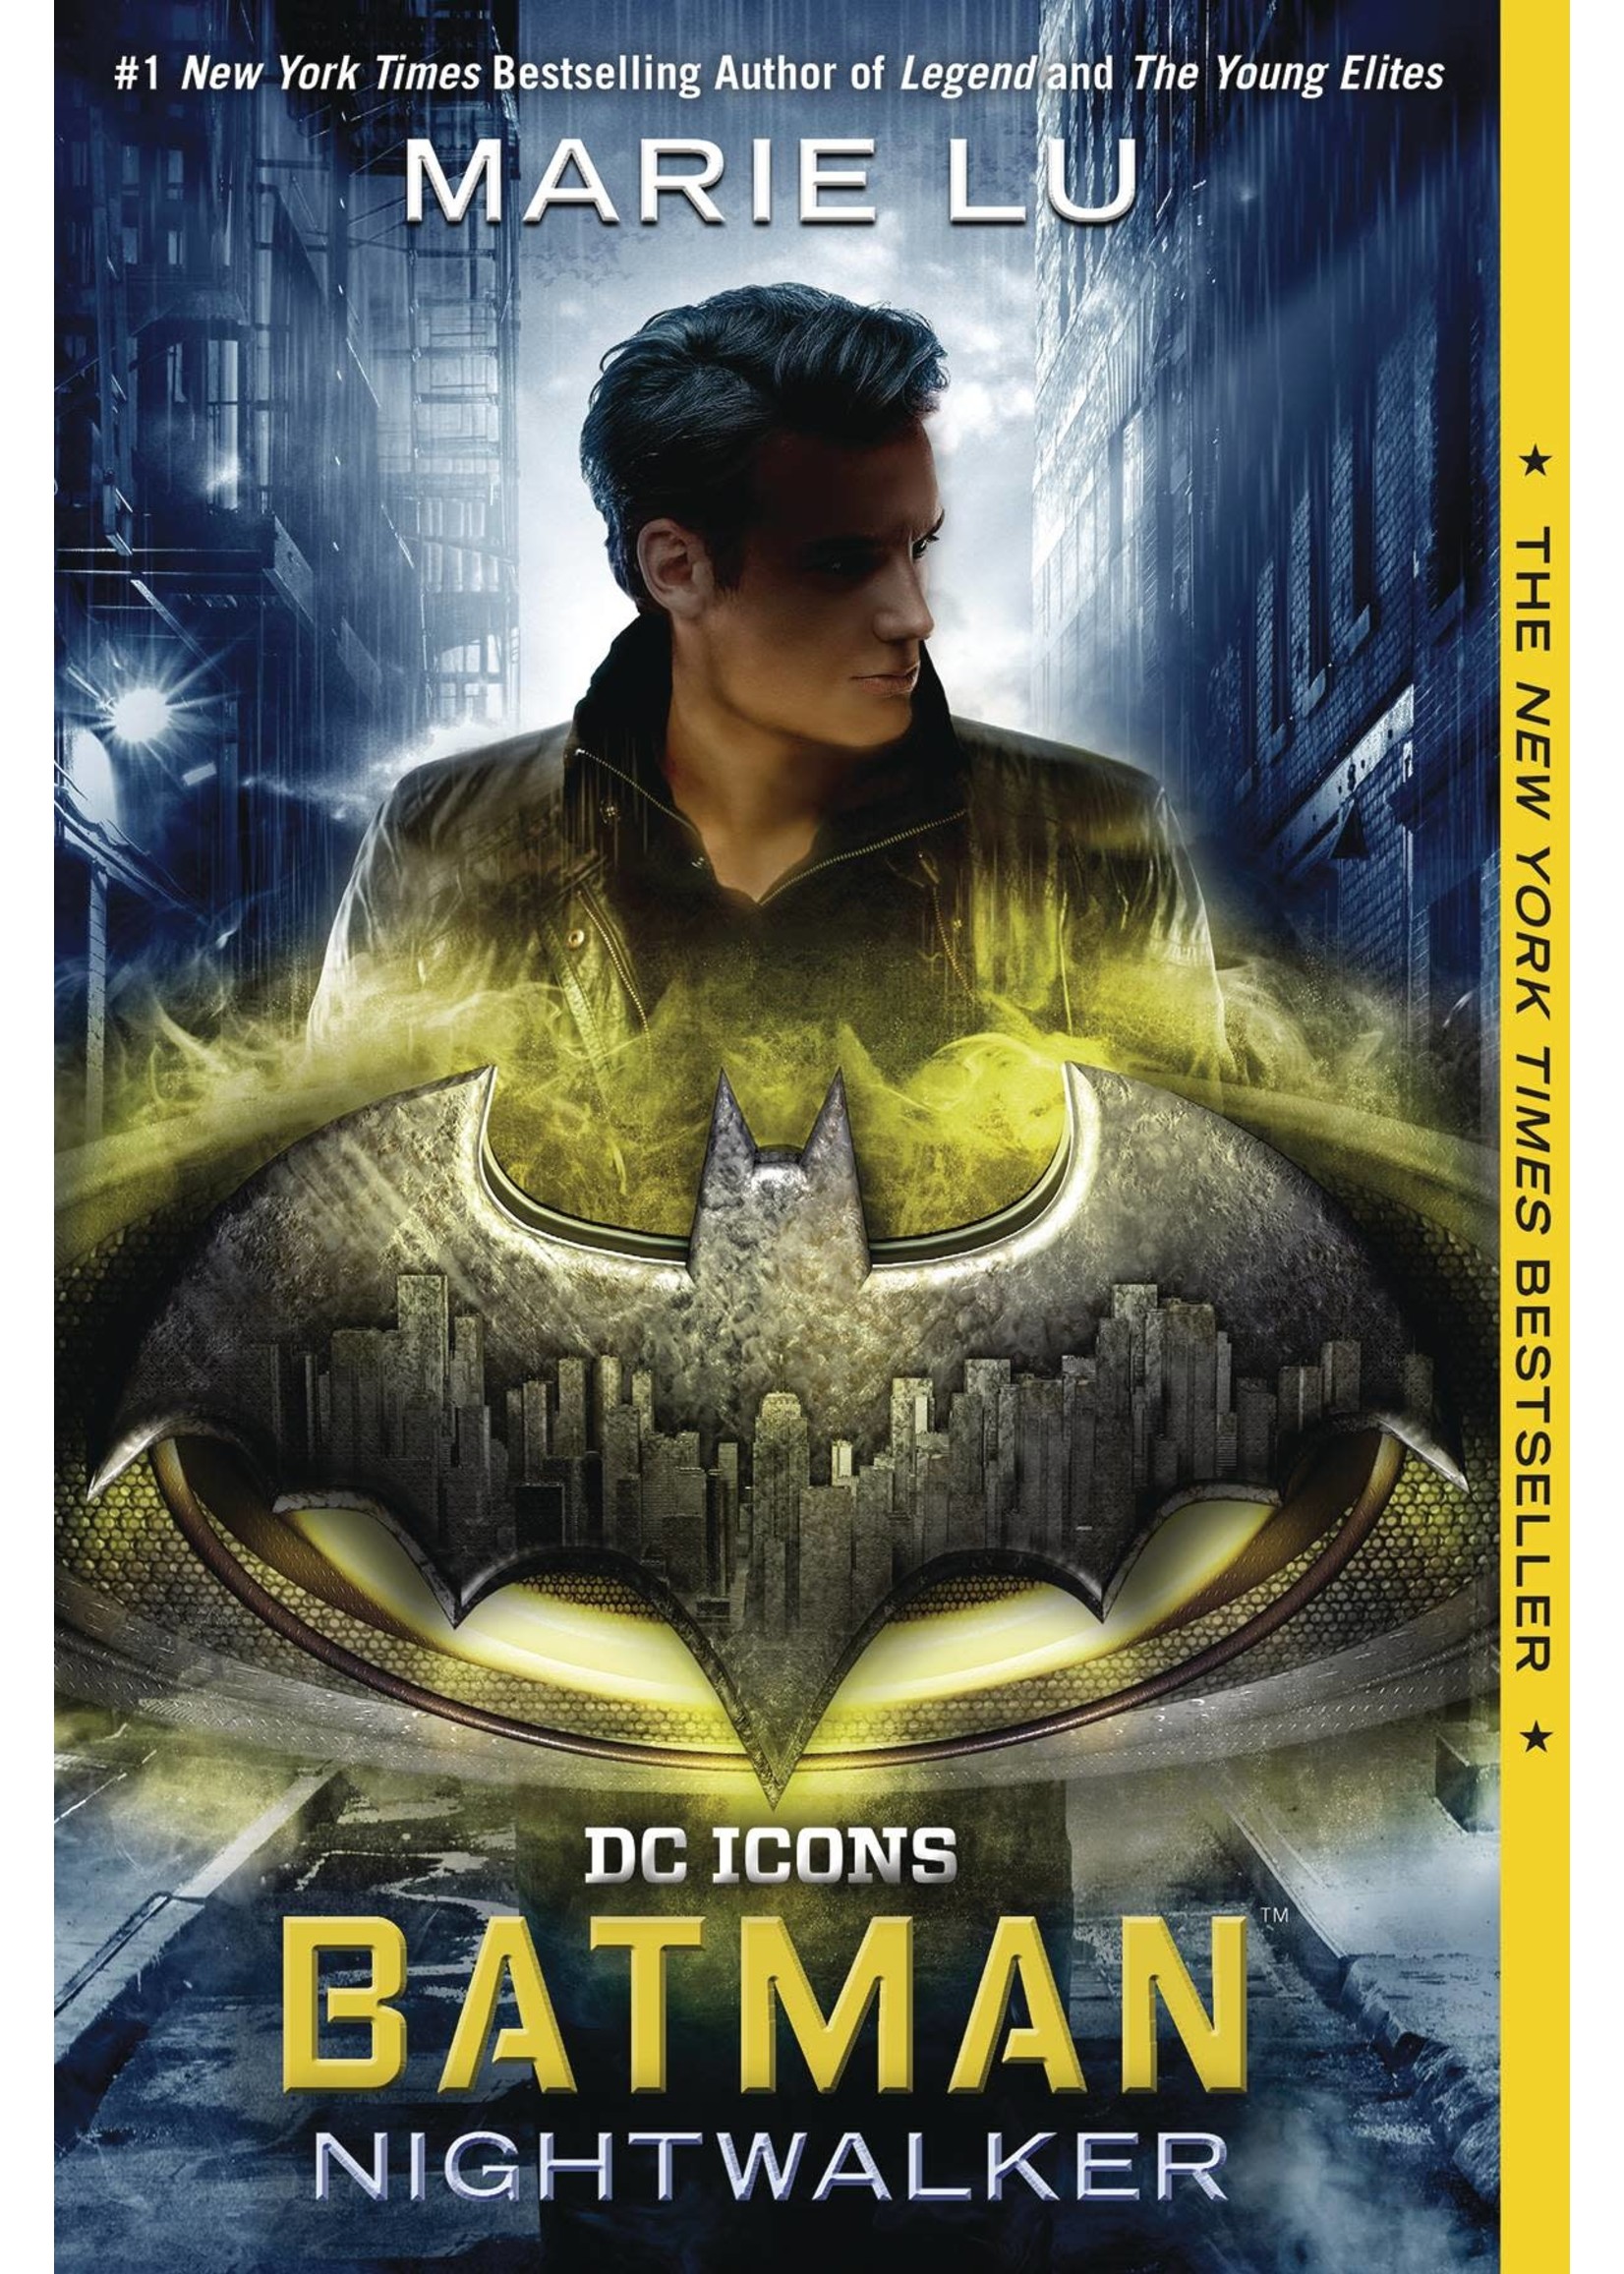 DC COMICS BATMAN NIGHTWALKER (novel)